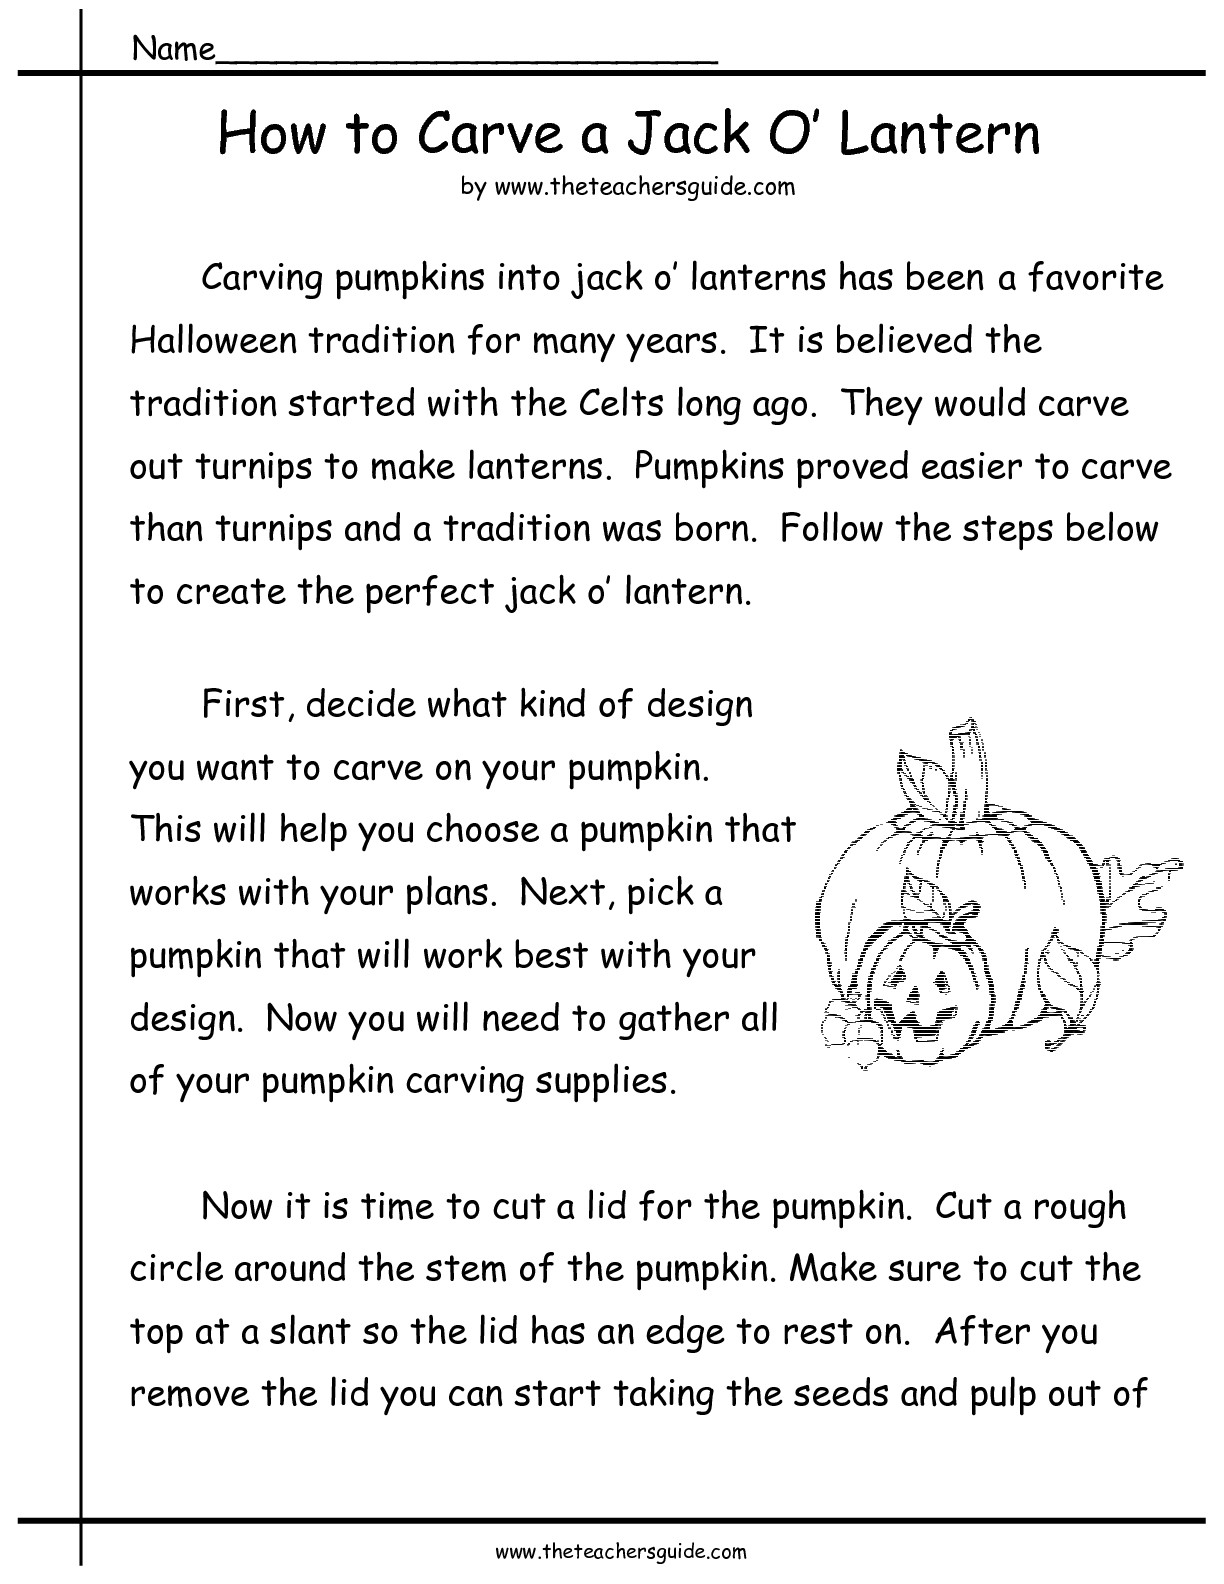 How to Carve a Pumpkin Worksheet Image